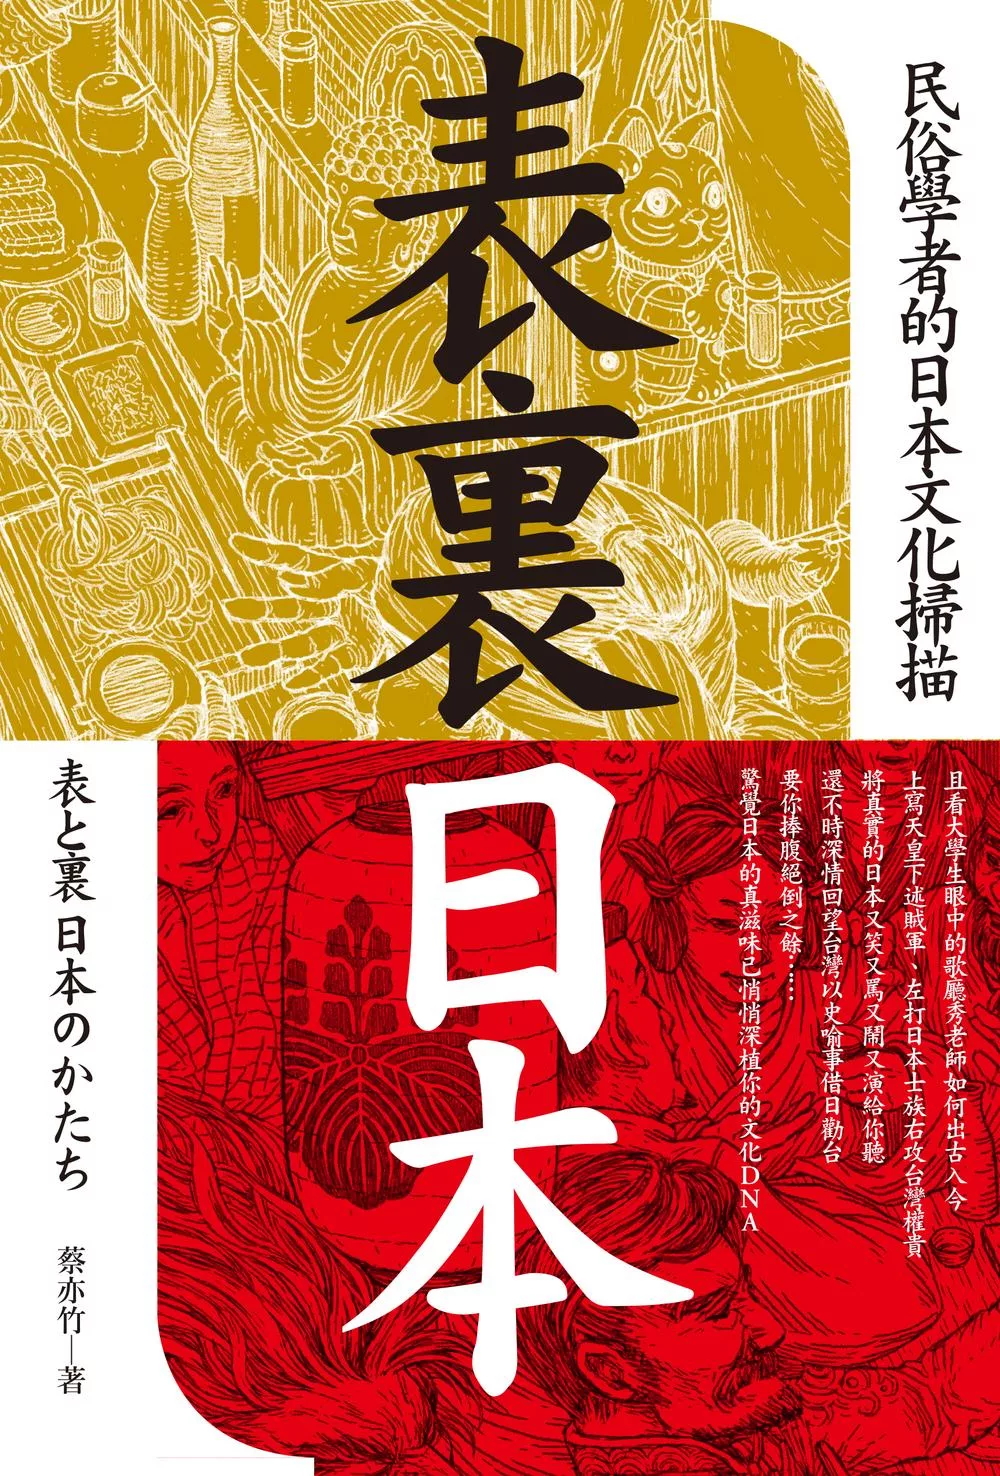 表裏日本：民俗學者的日本文化掃描 (電子書)